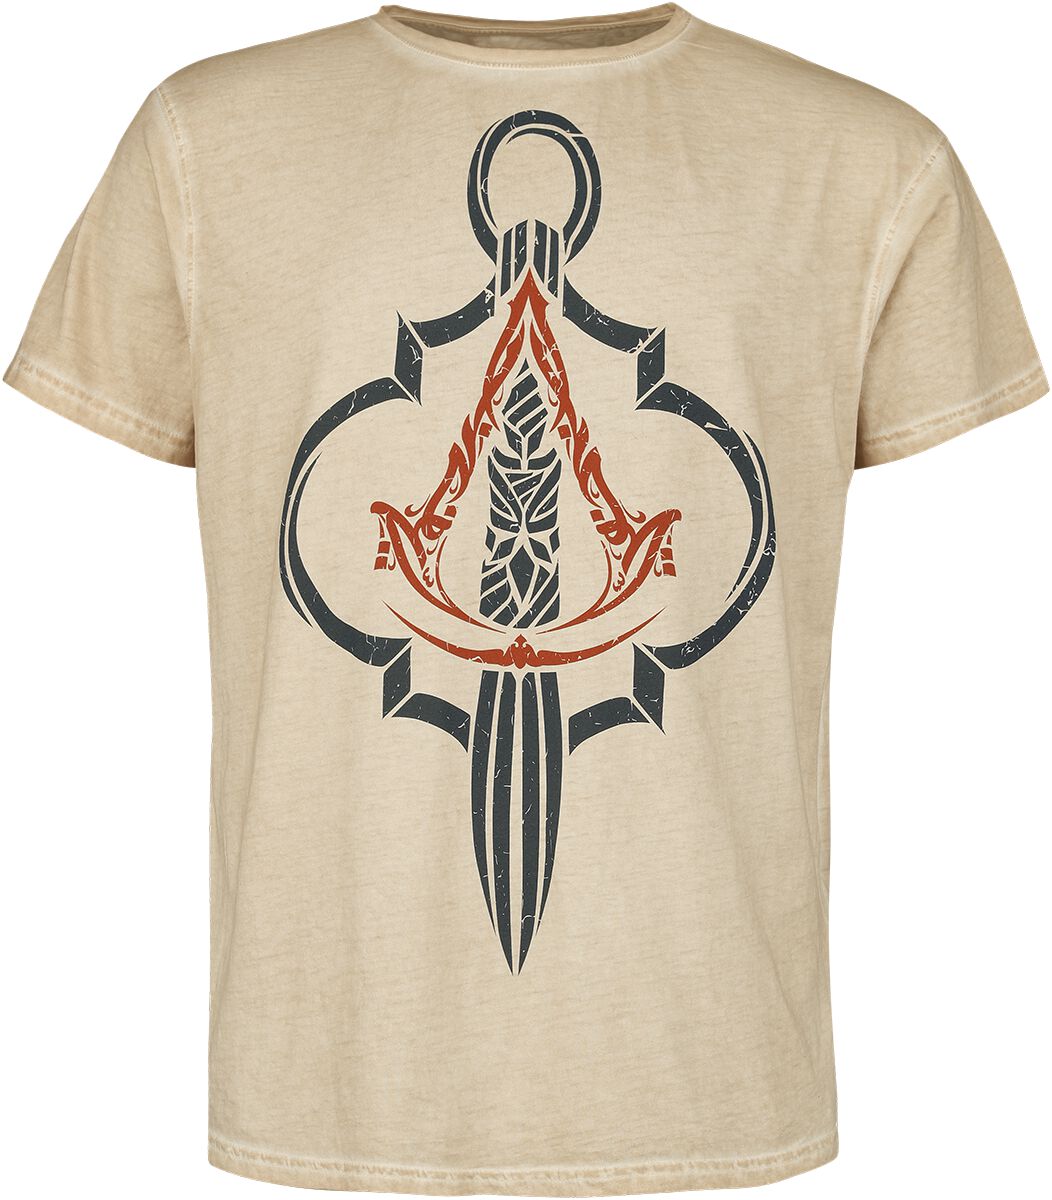 Assassin`s Creed - Gaming T-Shirt - Mirage - Crest - S bis XXL - für Männer - Größe S - beige  - EMP exklusives Merchandise!